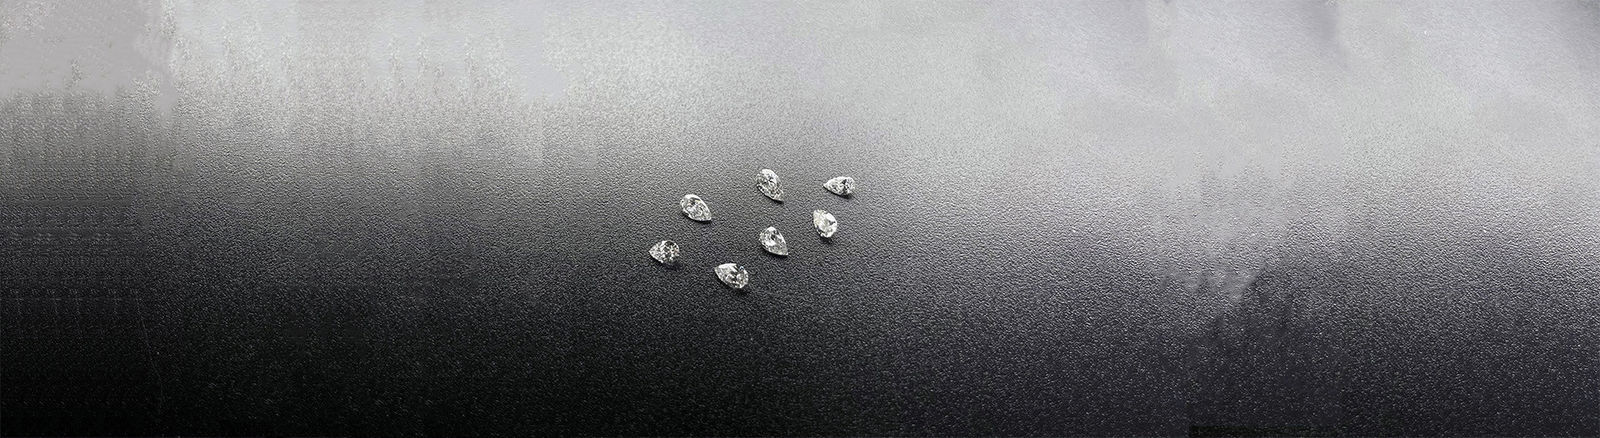 Viên kim cương được chứng nhận trong phòng thí nghiệm